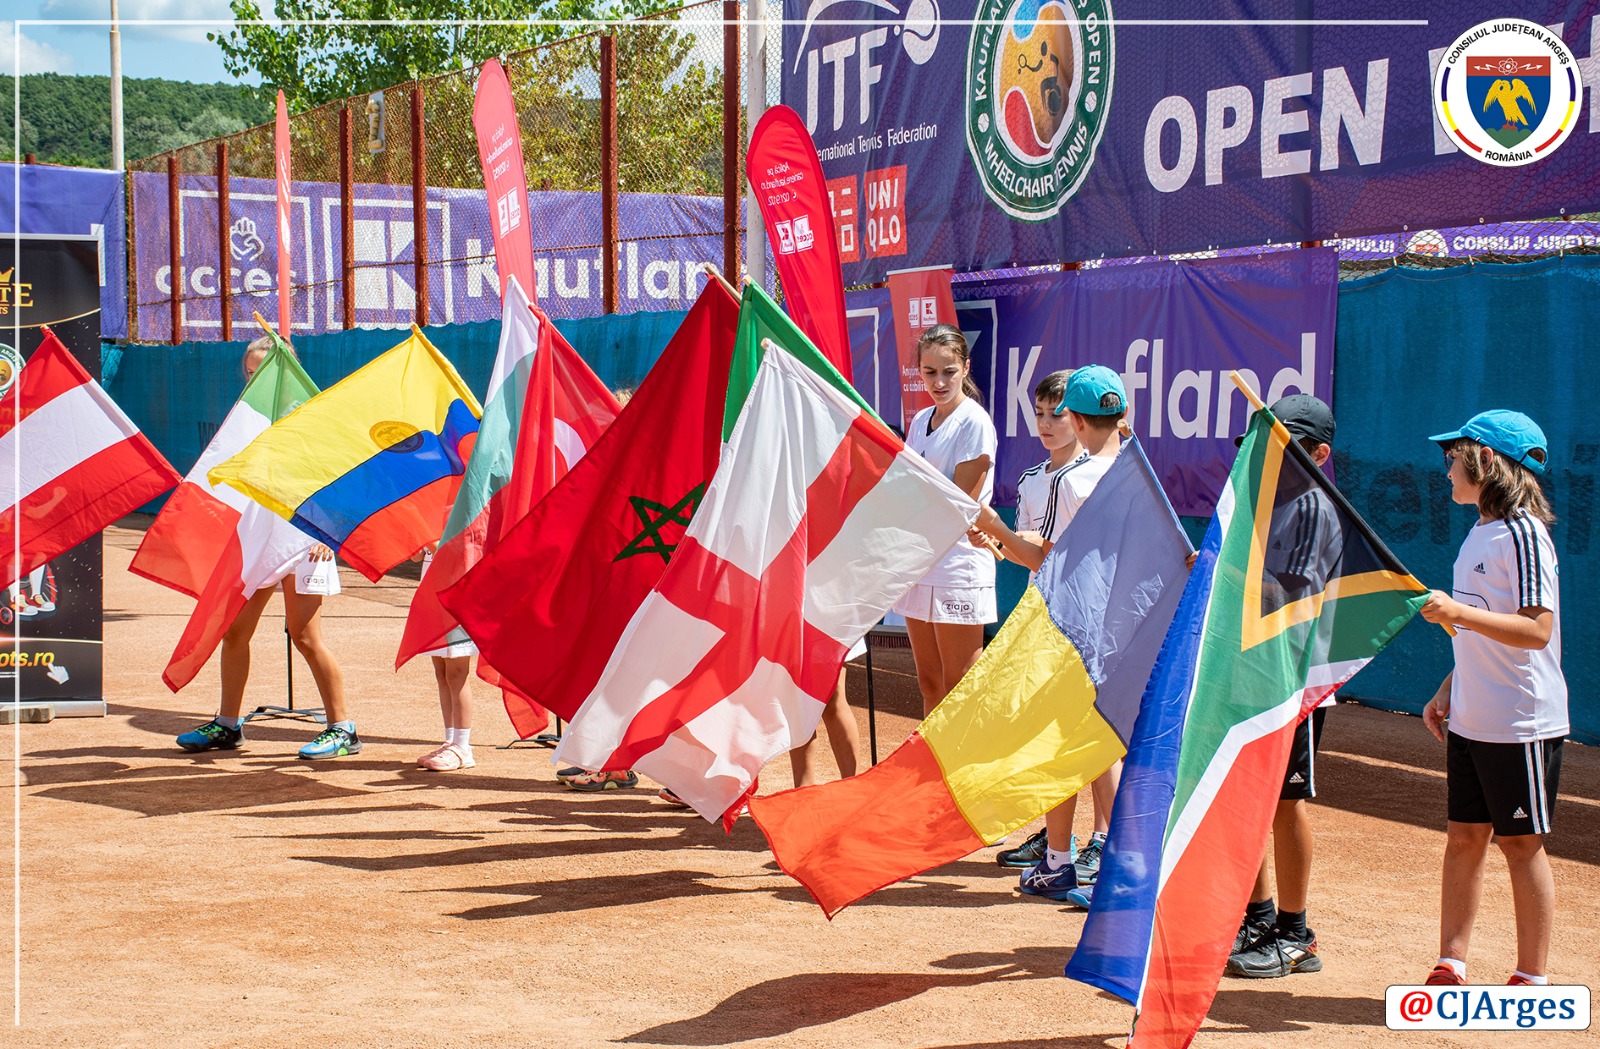 CJ ARGES - Turneul international de tenis destinat persoanelor cu dizabilitati (13).jpeg